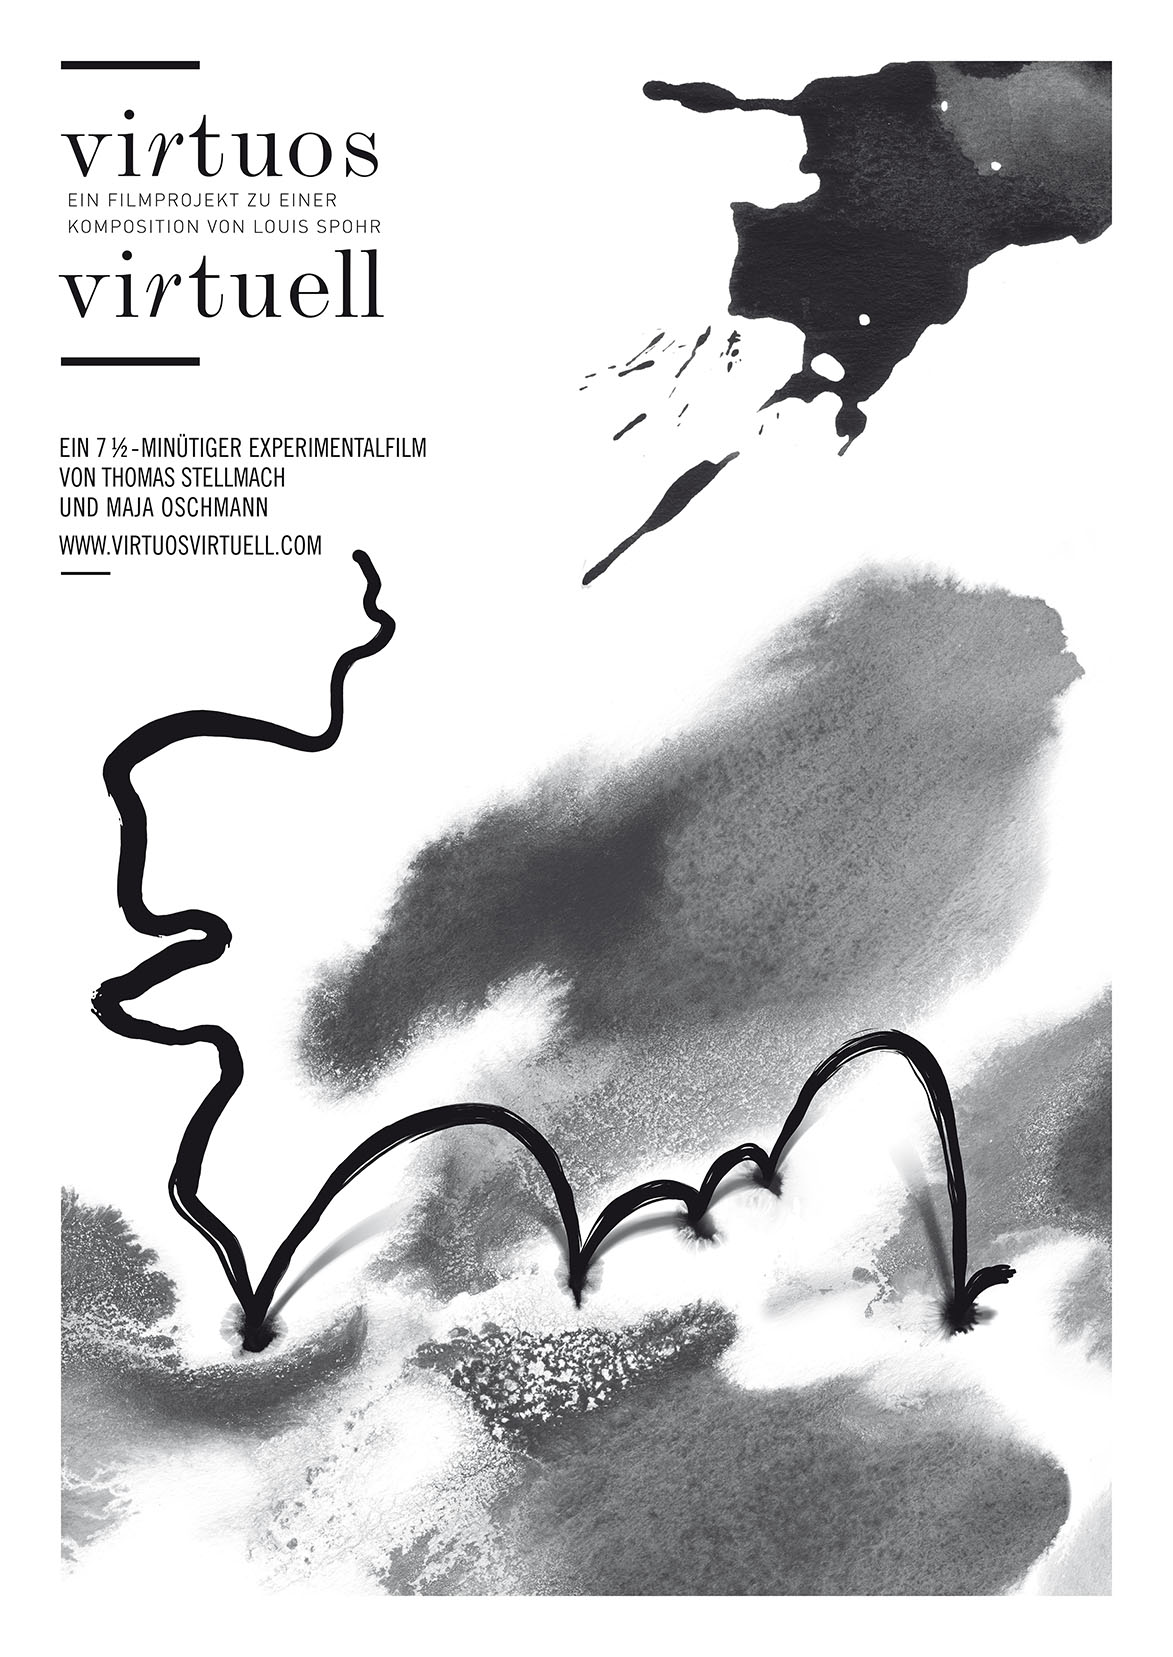 VIRTUOS VIRTUELL VIRTUOSO VIRTUAL, film poster